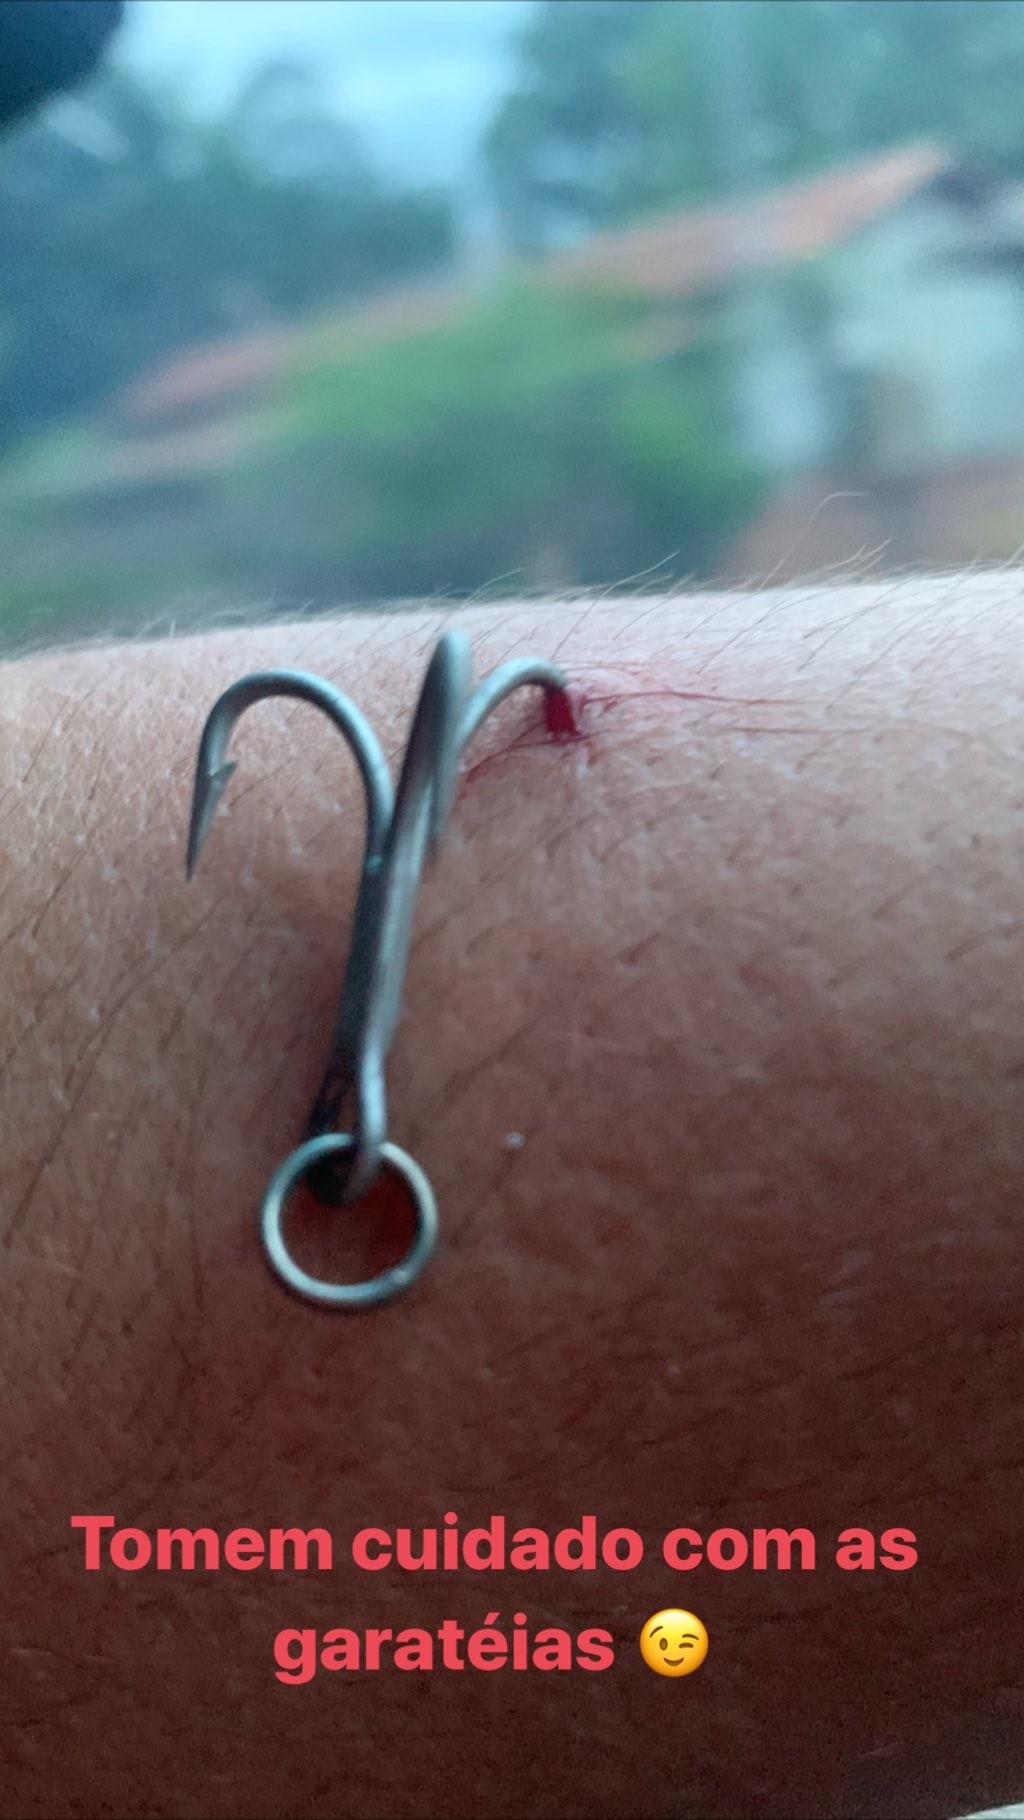 Fernando prendeu um anzol em seu braço em acidente de pesca (Foto: Reprodução/Instagram)